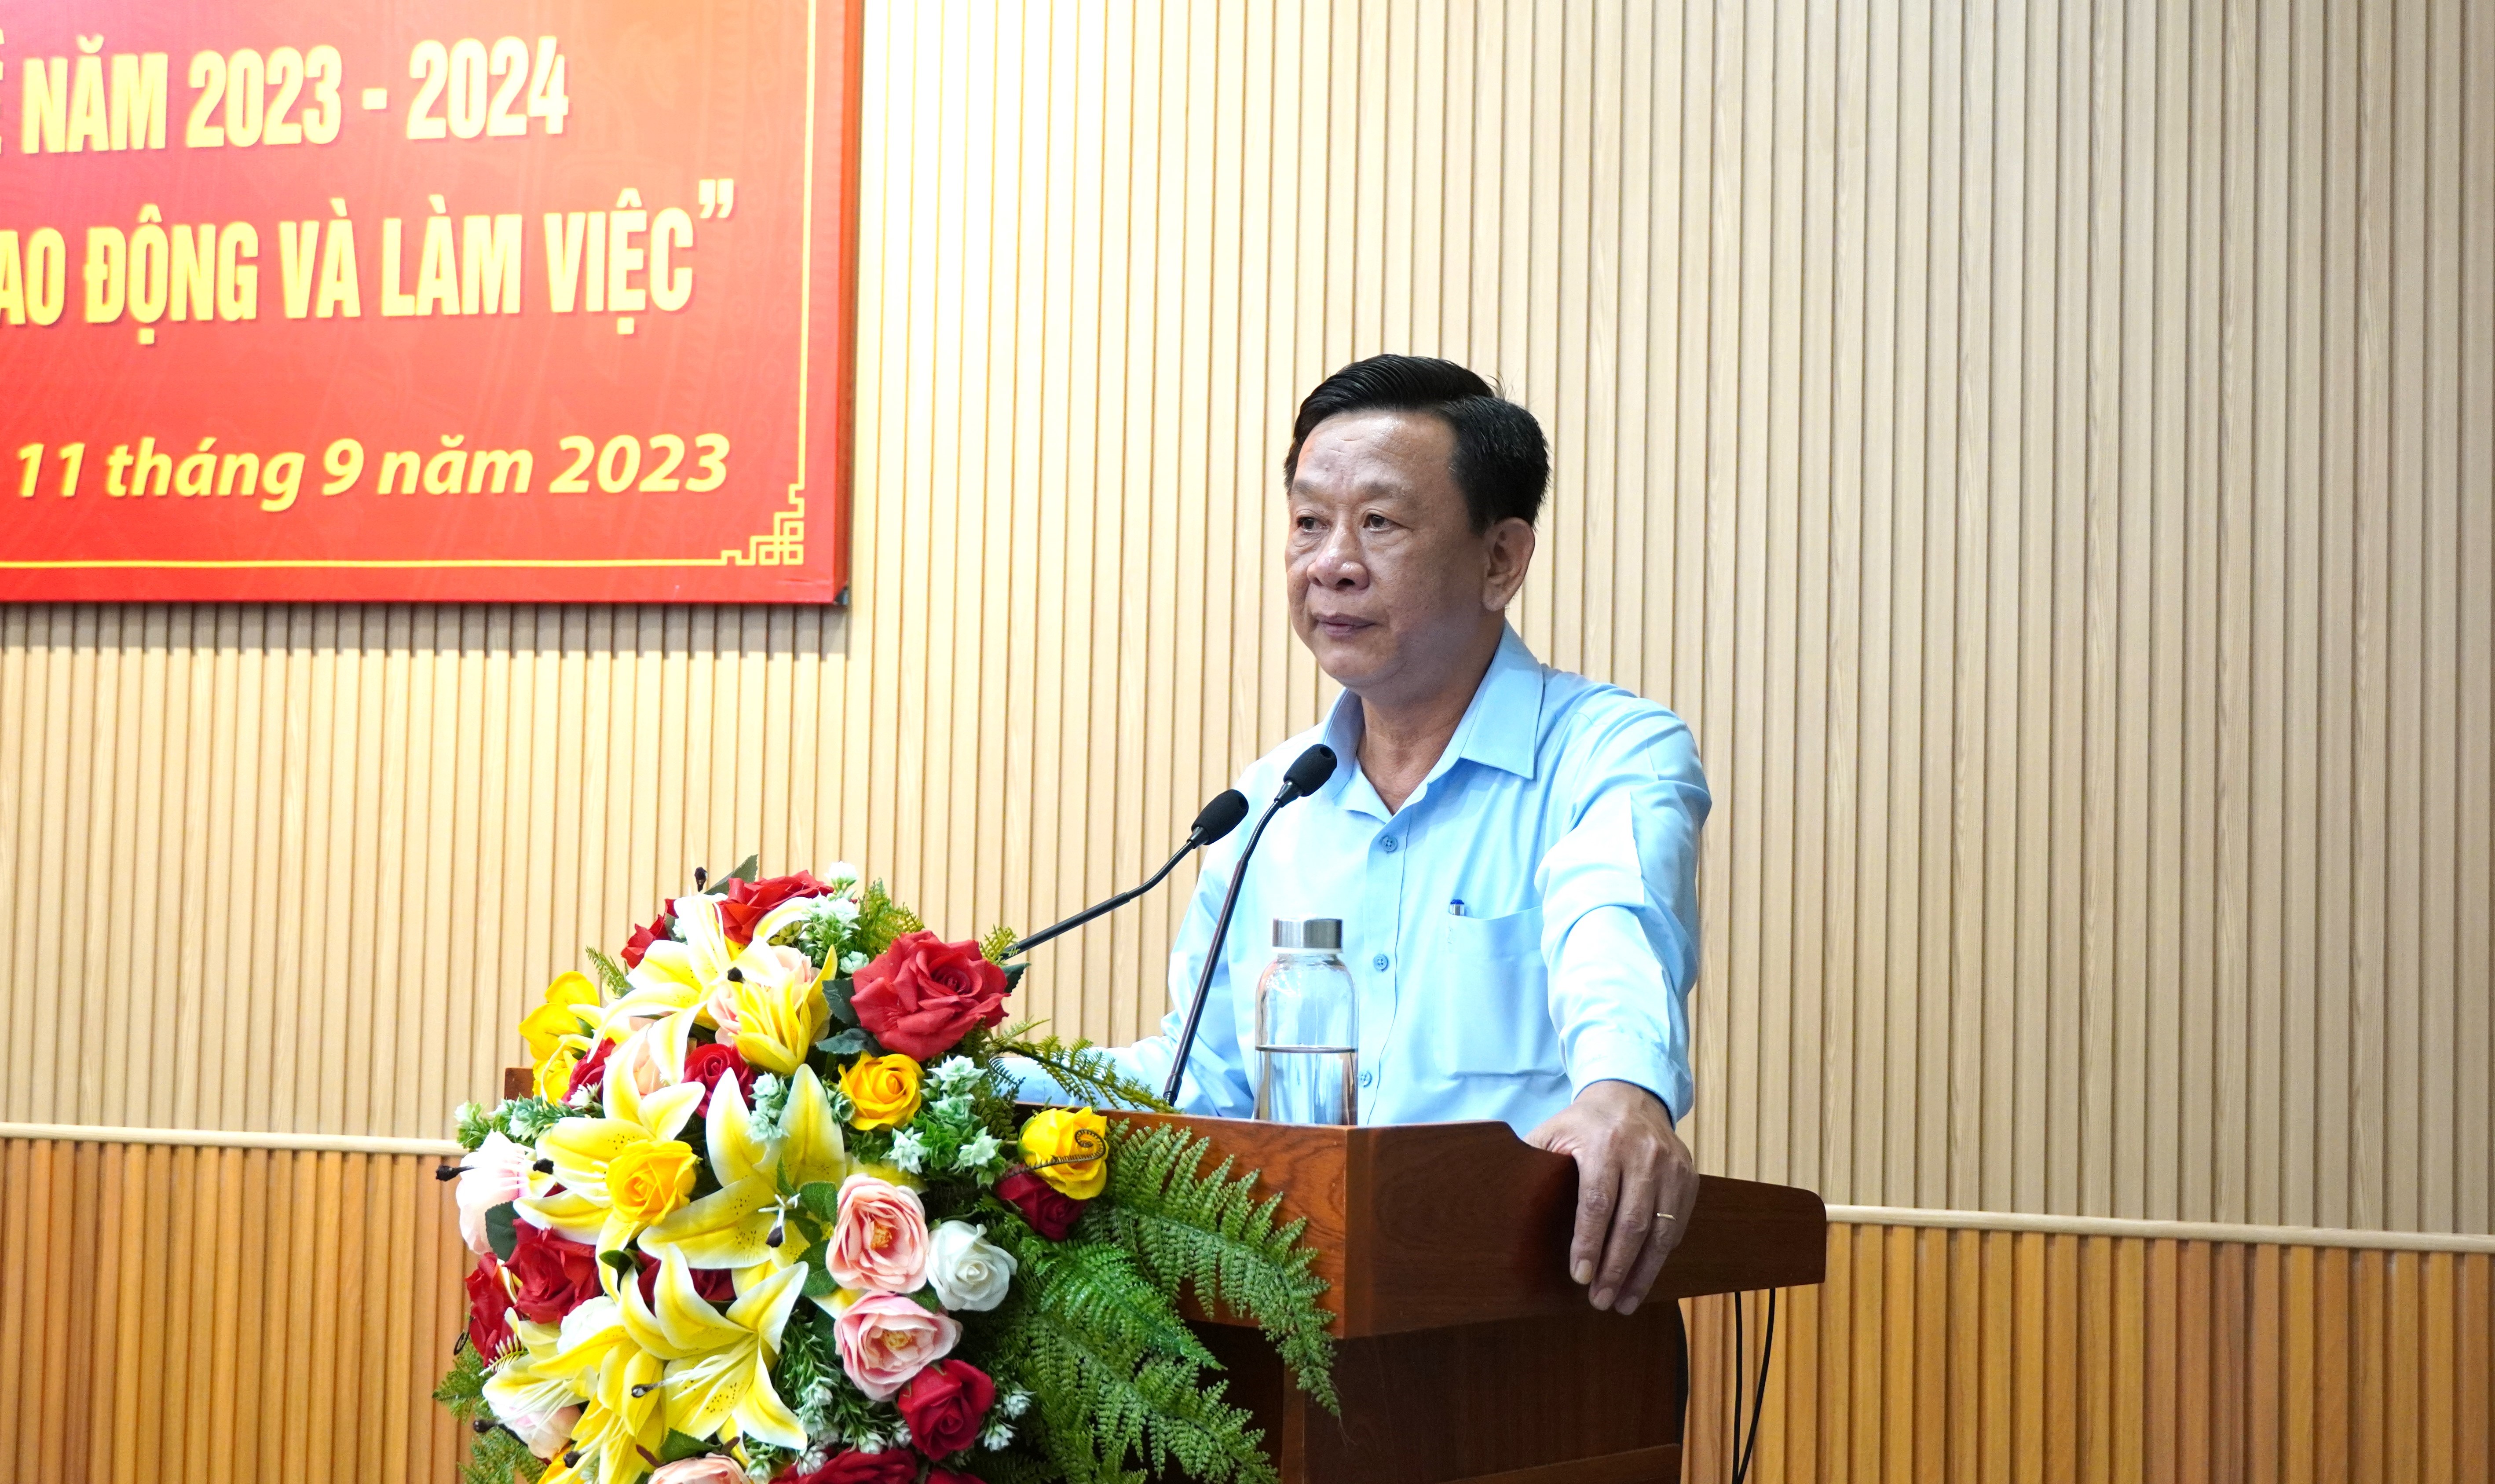 Đồng chí Hồ Trung Việt - Ủy viên Ban Thường vụ Tỉnh ủy, Trưởng Ban Tuyên giáo Tỉnh ủy quán triệt nội dung chuyên đề tại Hội nghị.